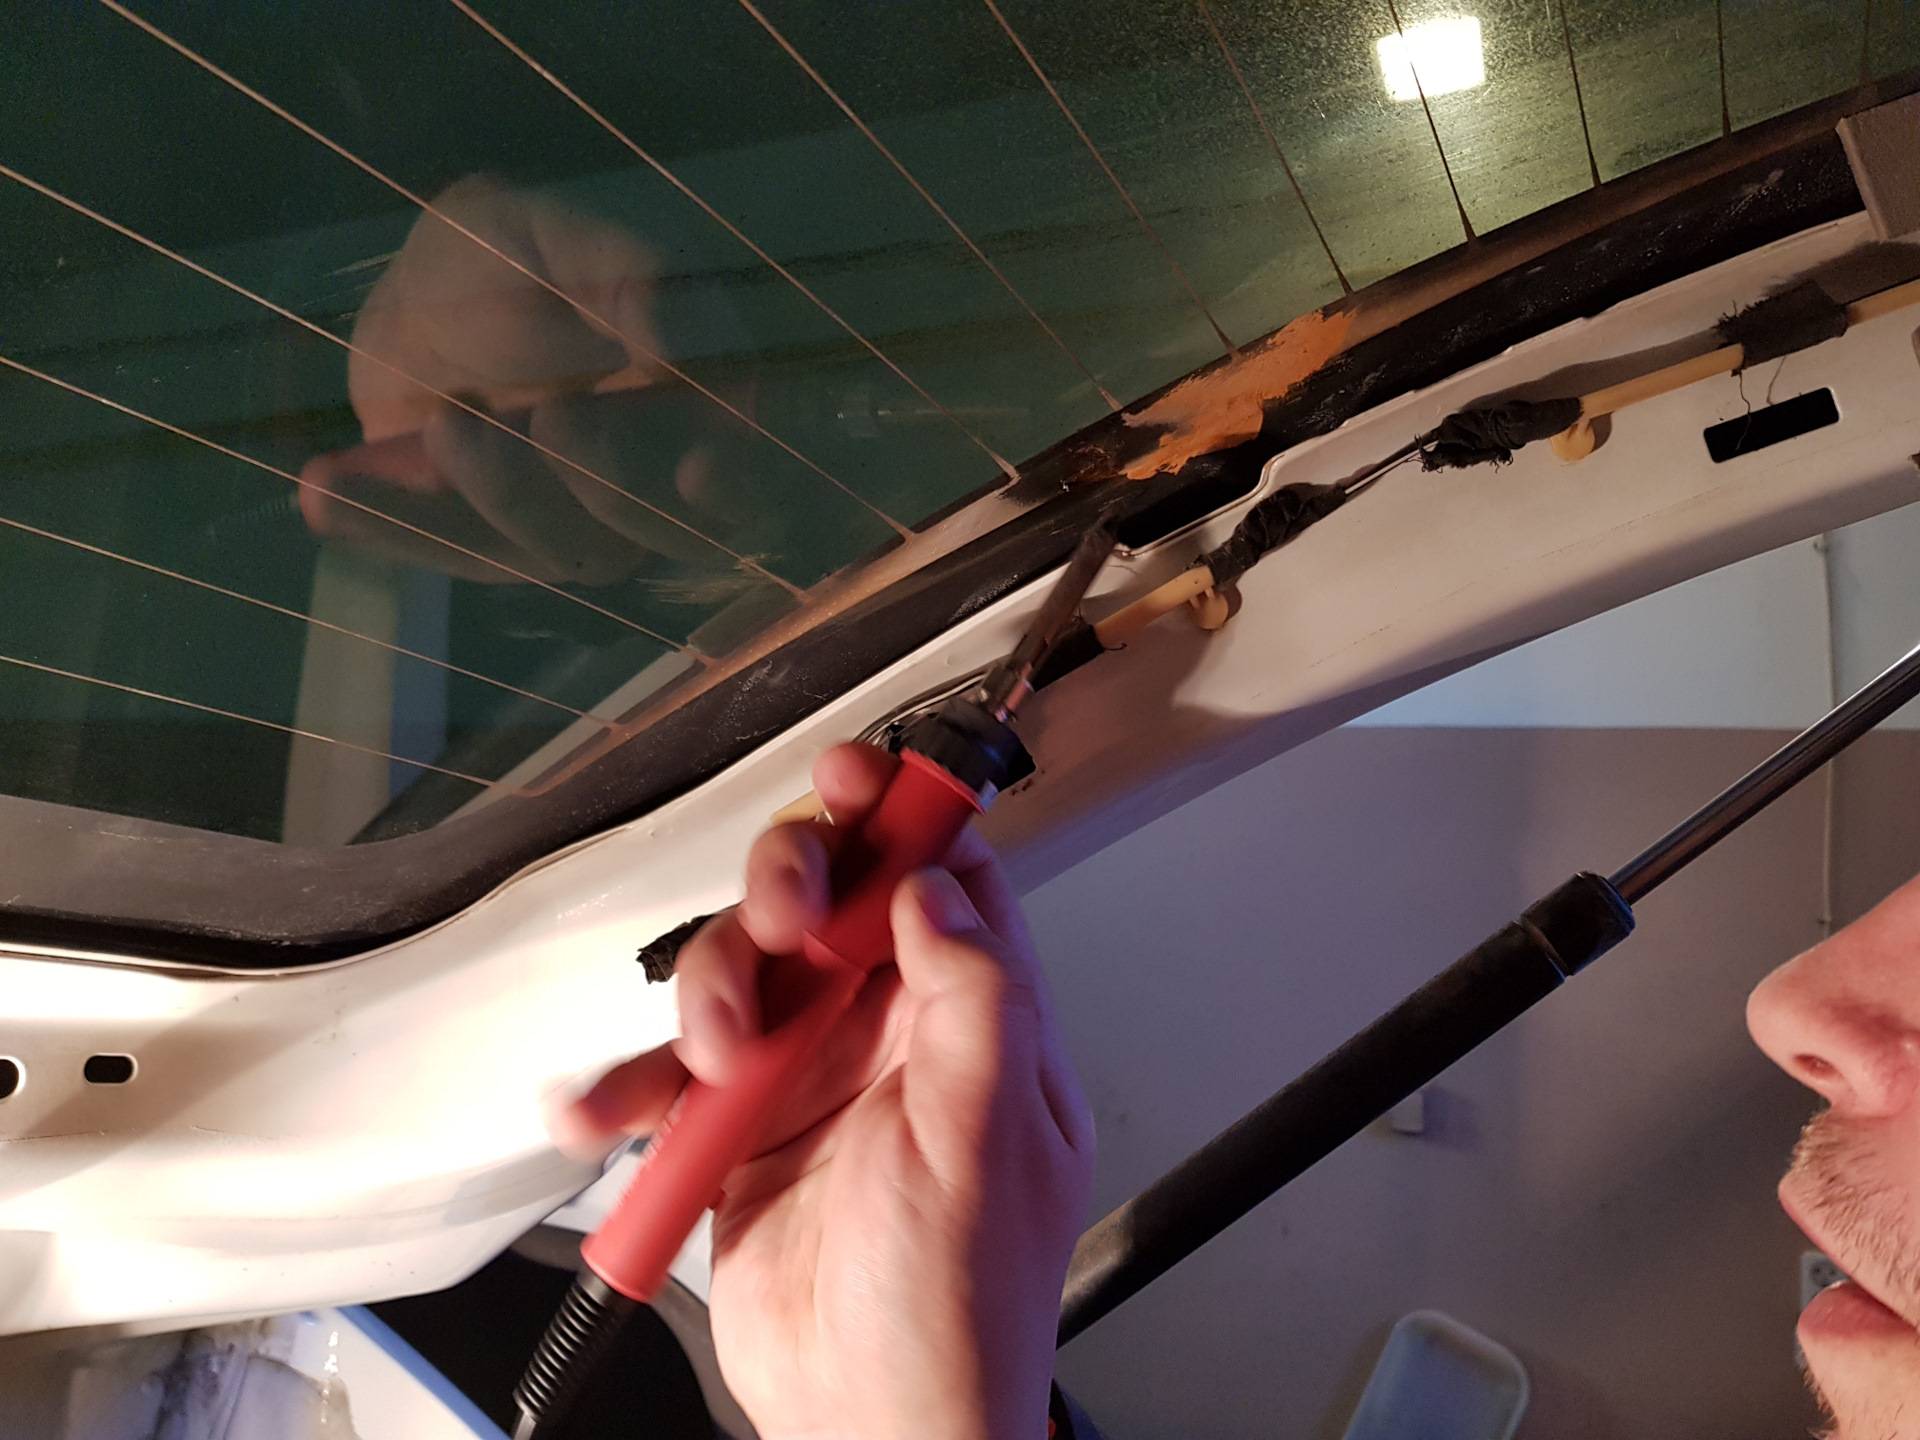 Ремонт нитей обогрева заднего стекла автомобиля своими руками